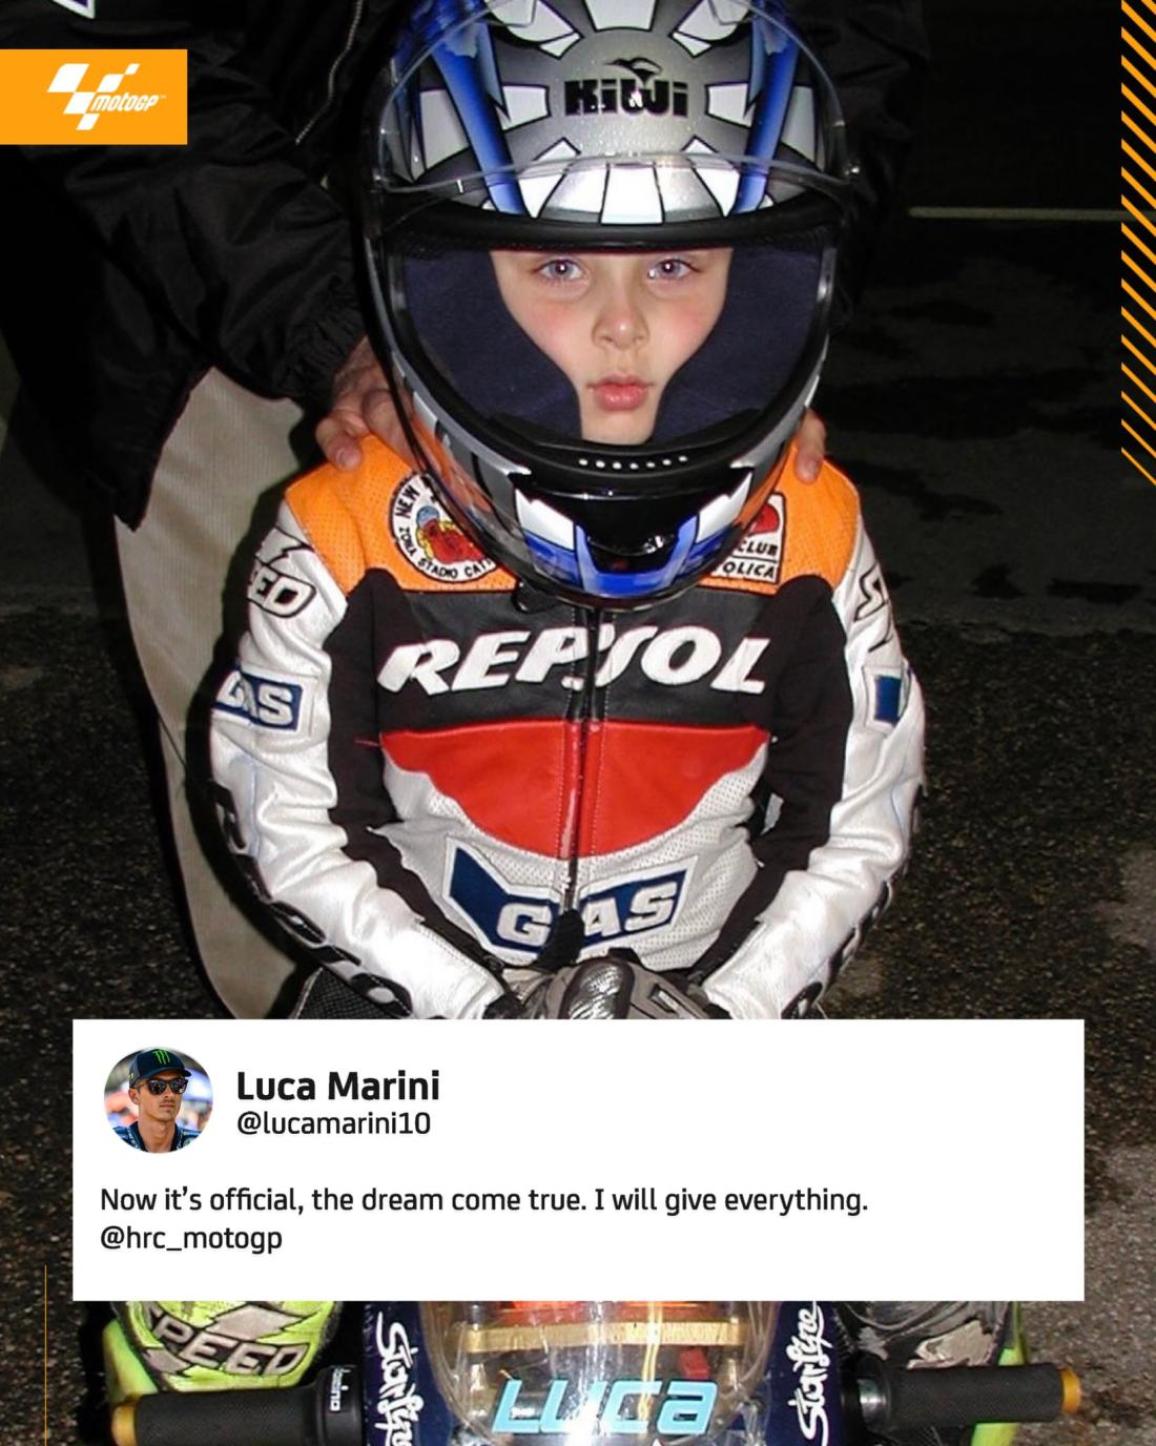 Ο Luca Marini για την Honda  – “Ήταν σαν να ήταν προδιαγεγραμμένο από την μοίρα” [VIDEO]